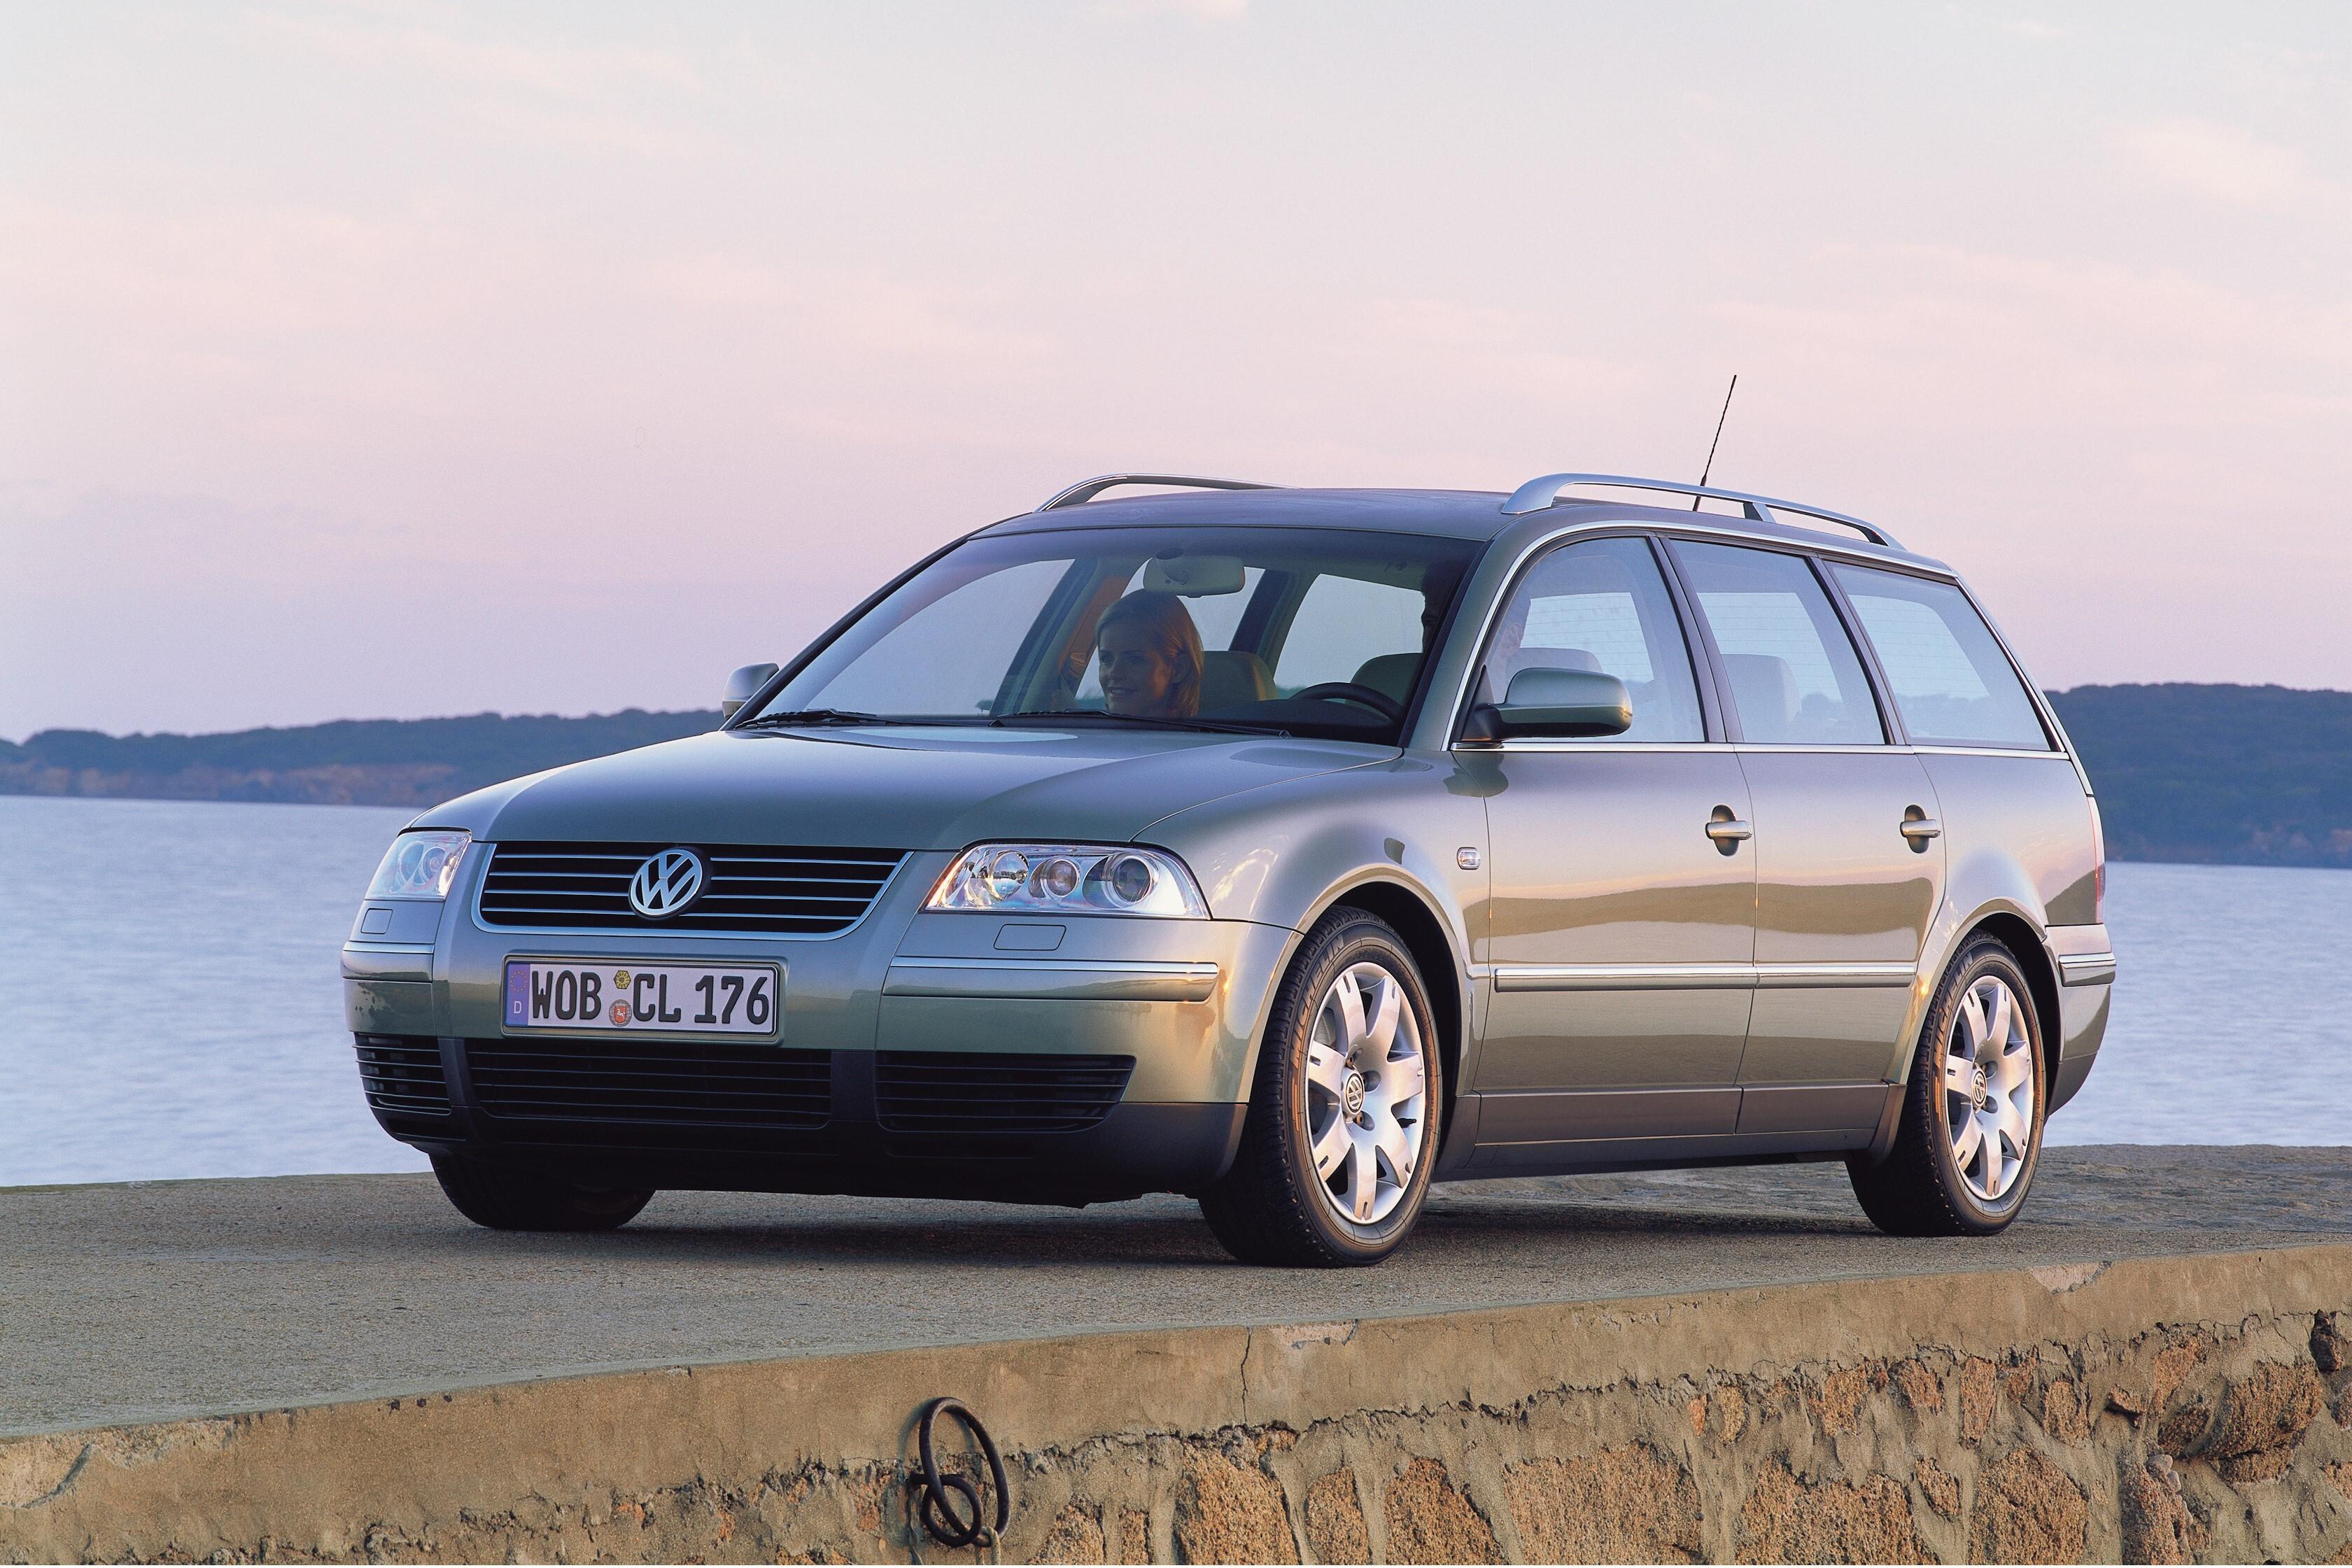 Пассат б5 универсал 1.9 дизель. Volkswagen b5 универсал. VW Passat b5 универсал. Passat b5.5. VW Passat универсал 2005.